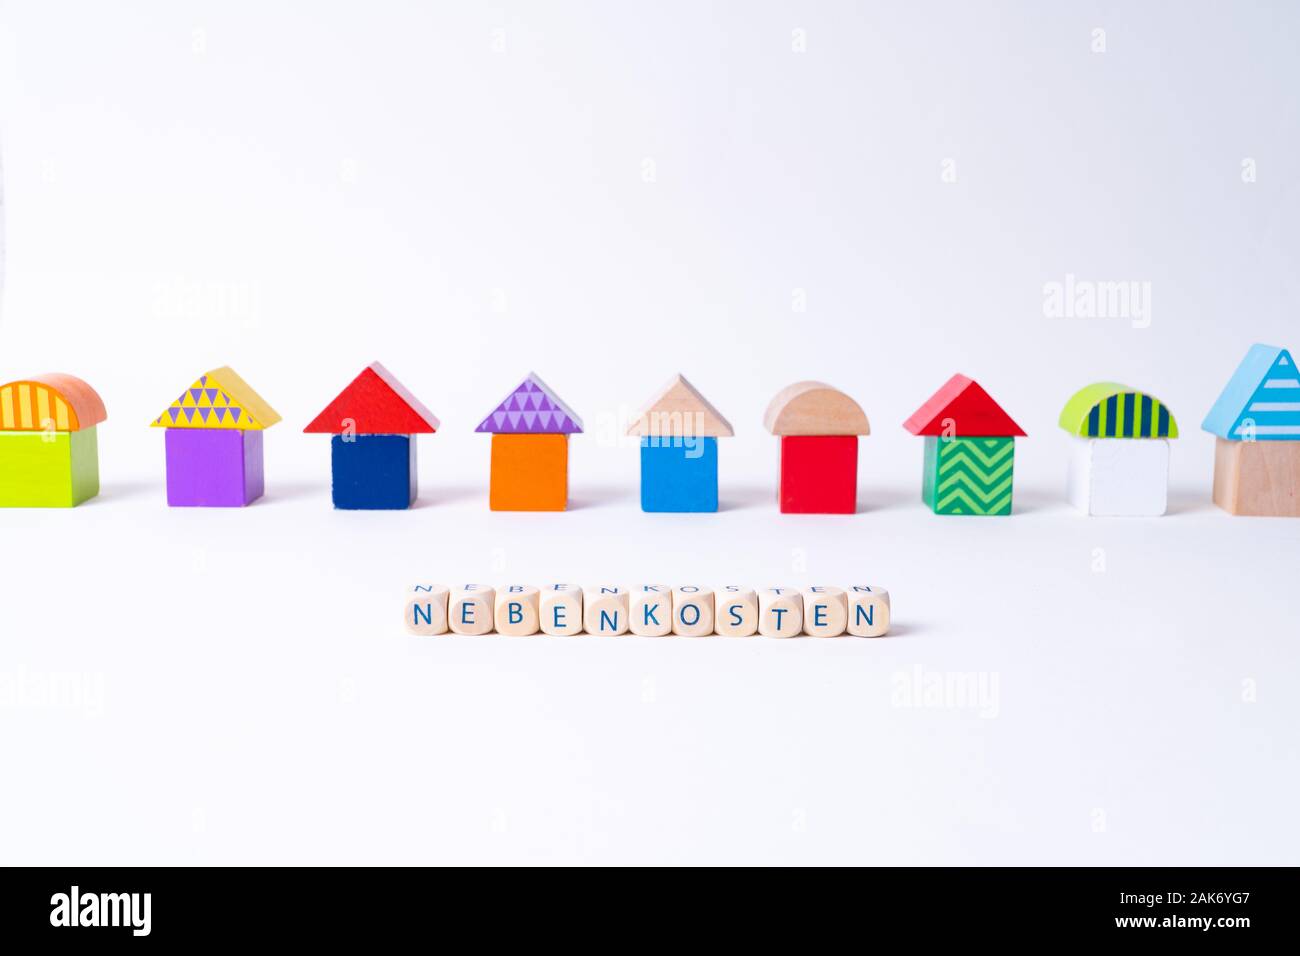 Glaçons avec des lettres pour dire 'Nebenkosten', le mot allemand pour les coûts supplémentaires en face d'une rangée de maisons construites de blocs de jouets Jouets colorés Banque D'Images